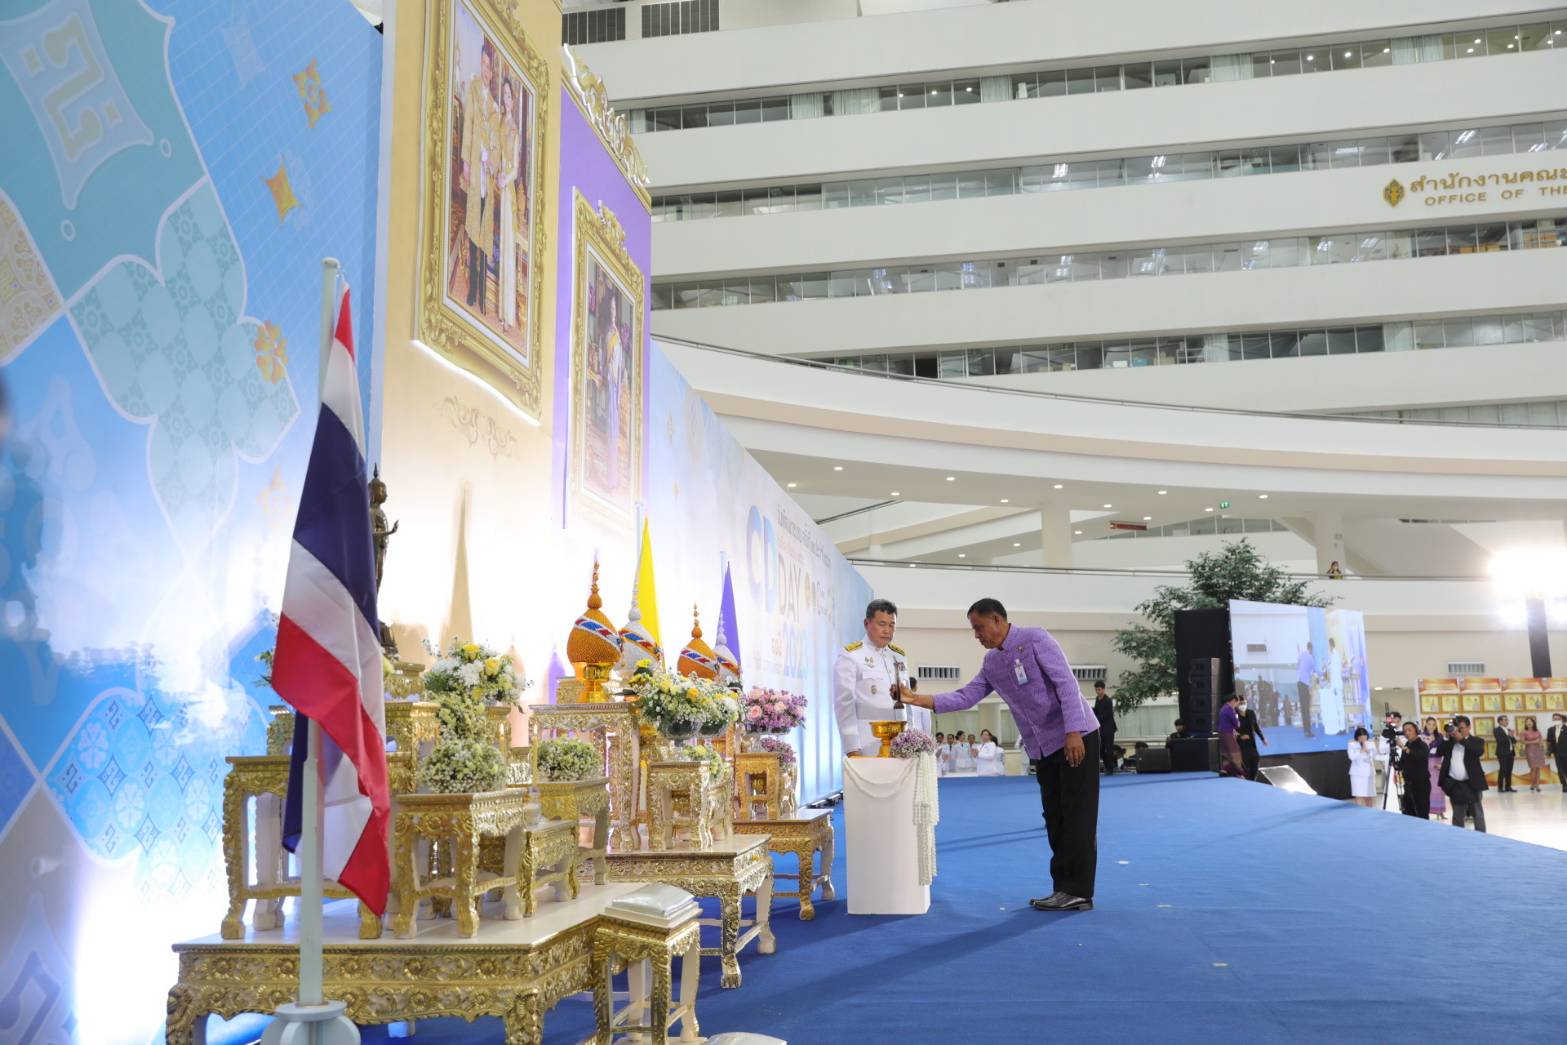 พช.จัดงาน “วันพัฒนาชุมชน” ครั้งที่ 12 ปลัดมหาดไทยมอบรางวัลพระราชทานกรมสมเด็จพระเทพรัตนราชสุดาฯ-รางวัล”ตำบล-หมู่บ้าน”เศรษฐกิจพอเพียง”อยู่เย็น เป็นสุข”